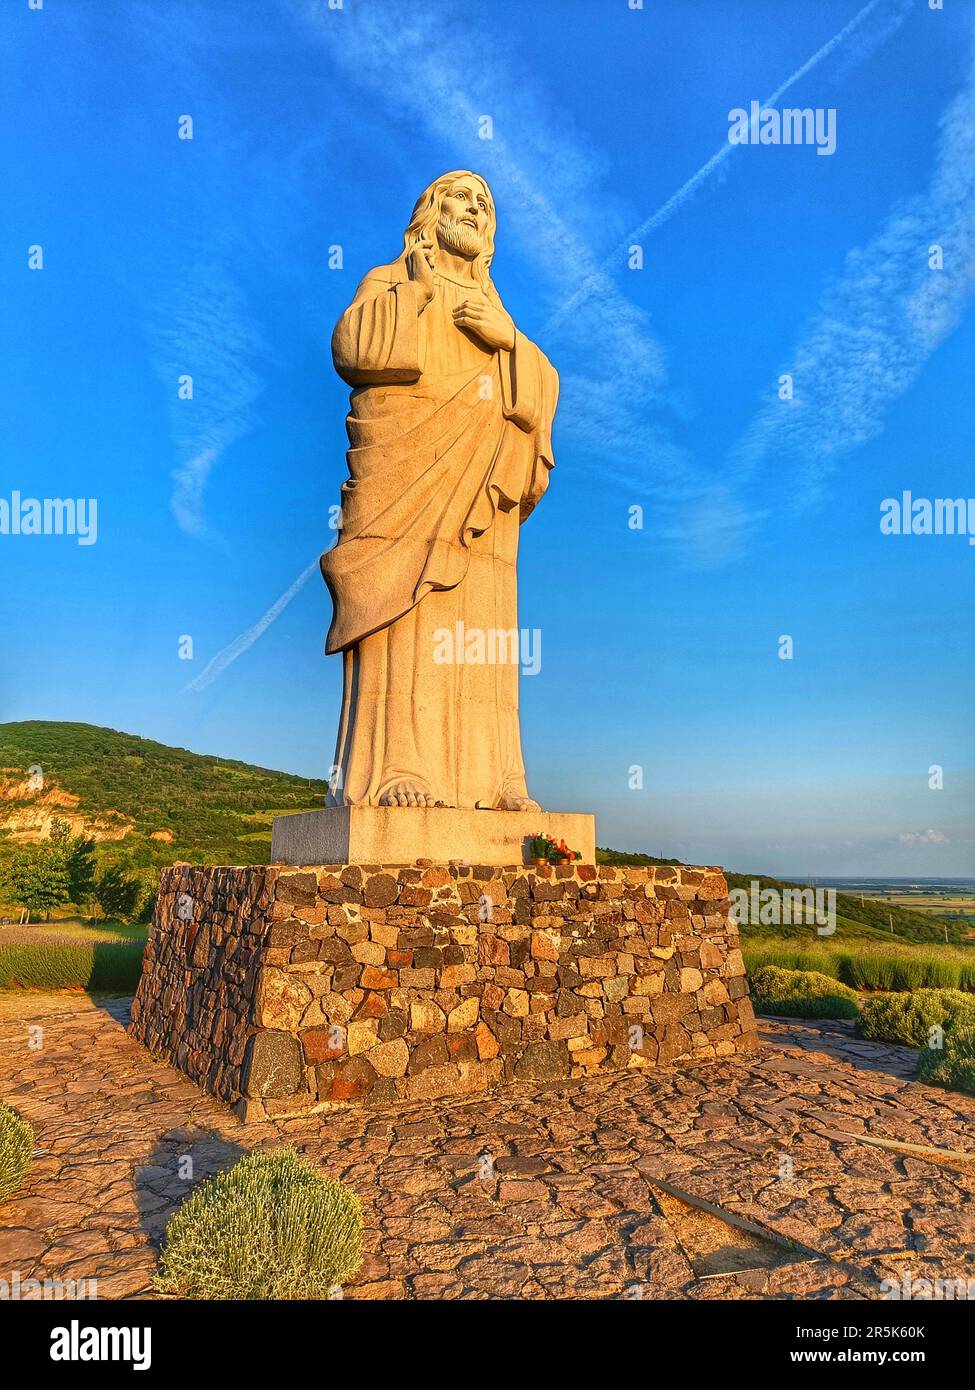 Monumento a Gesù Cristo (Áldó Krisztus) a Tarcal, nella regione di Tokaj, in Ungheria. Statua religiosa gigante durante il tramonto. Foto Stock